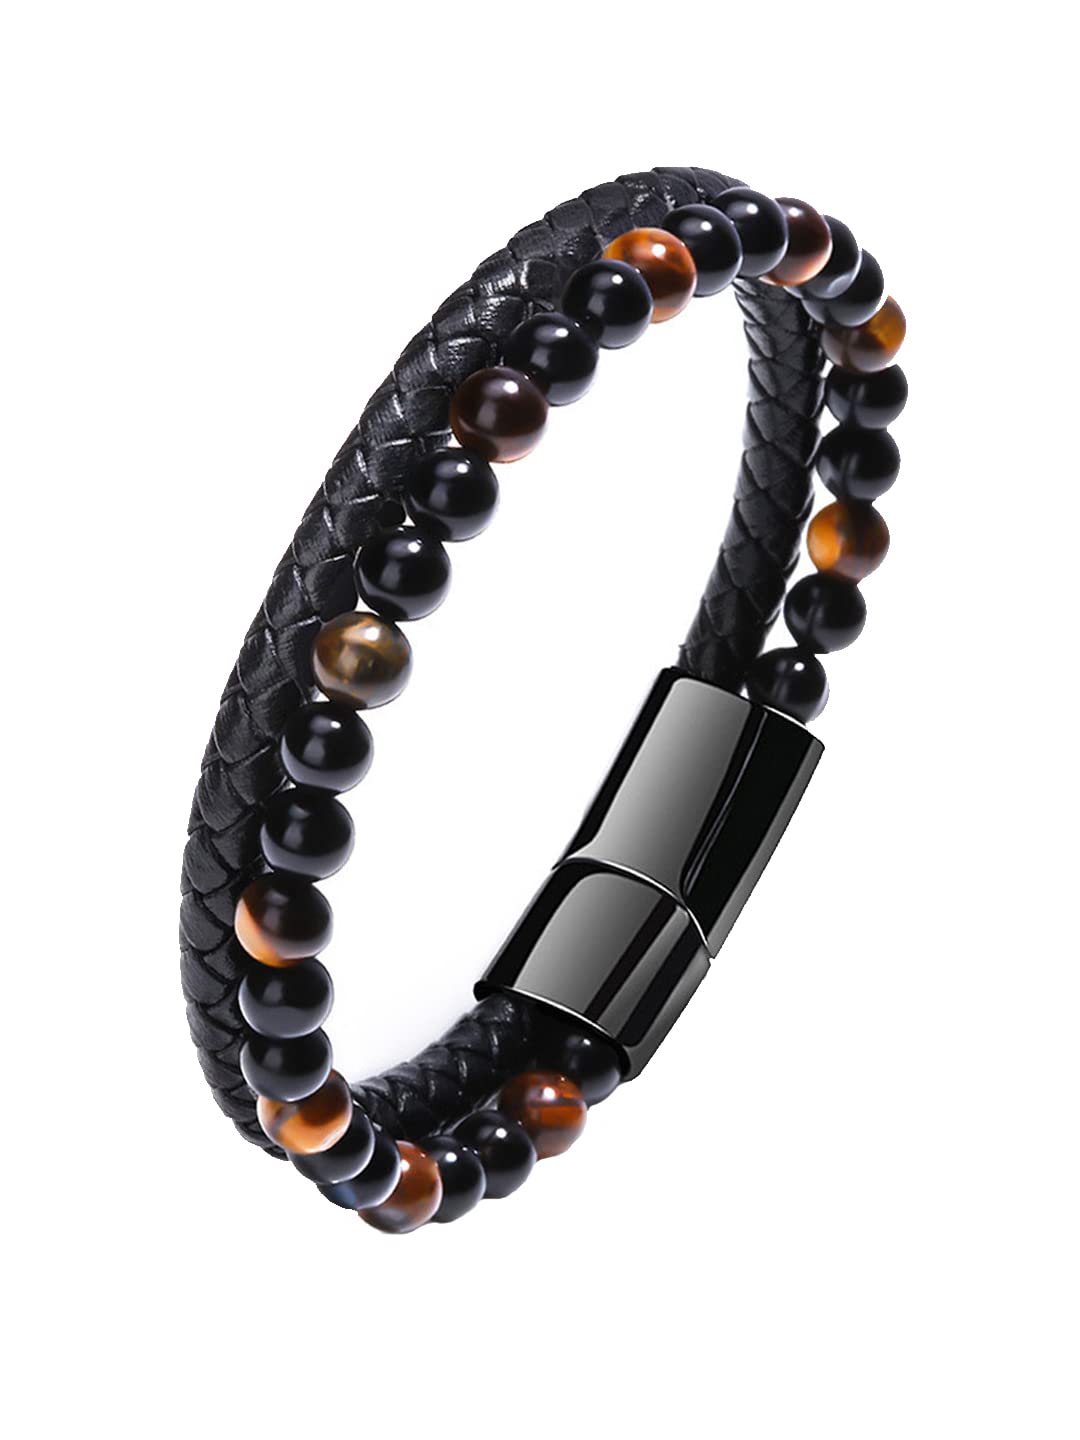 Kairangi Bracelet For Men Black and Orange Beaded Stretchable Bracelet For Men and Boys